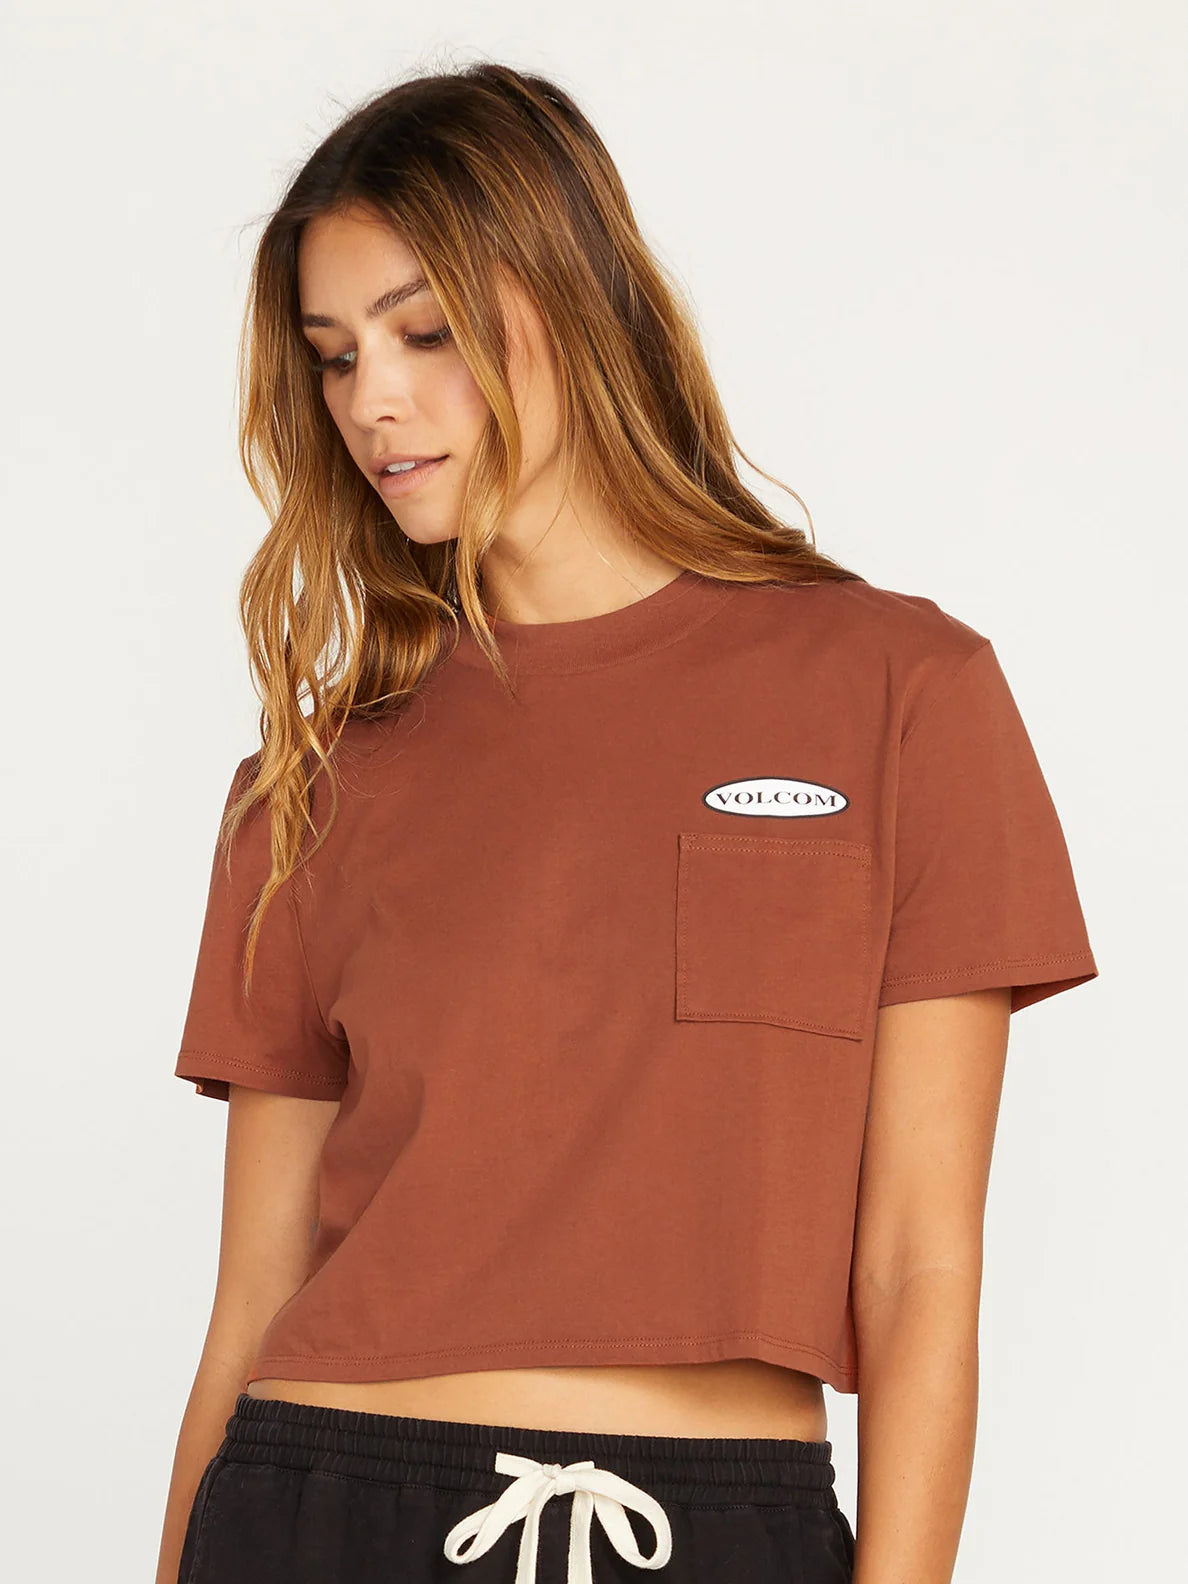 Volcom Pocket Dial Mädchen-T-Shirt – Dark Clay | Meistverkaufte Produkte | Neue Produkte | Neueste Produkte | surfdevils.com